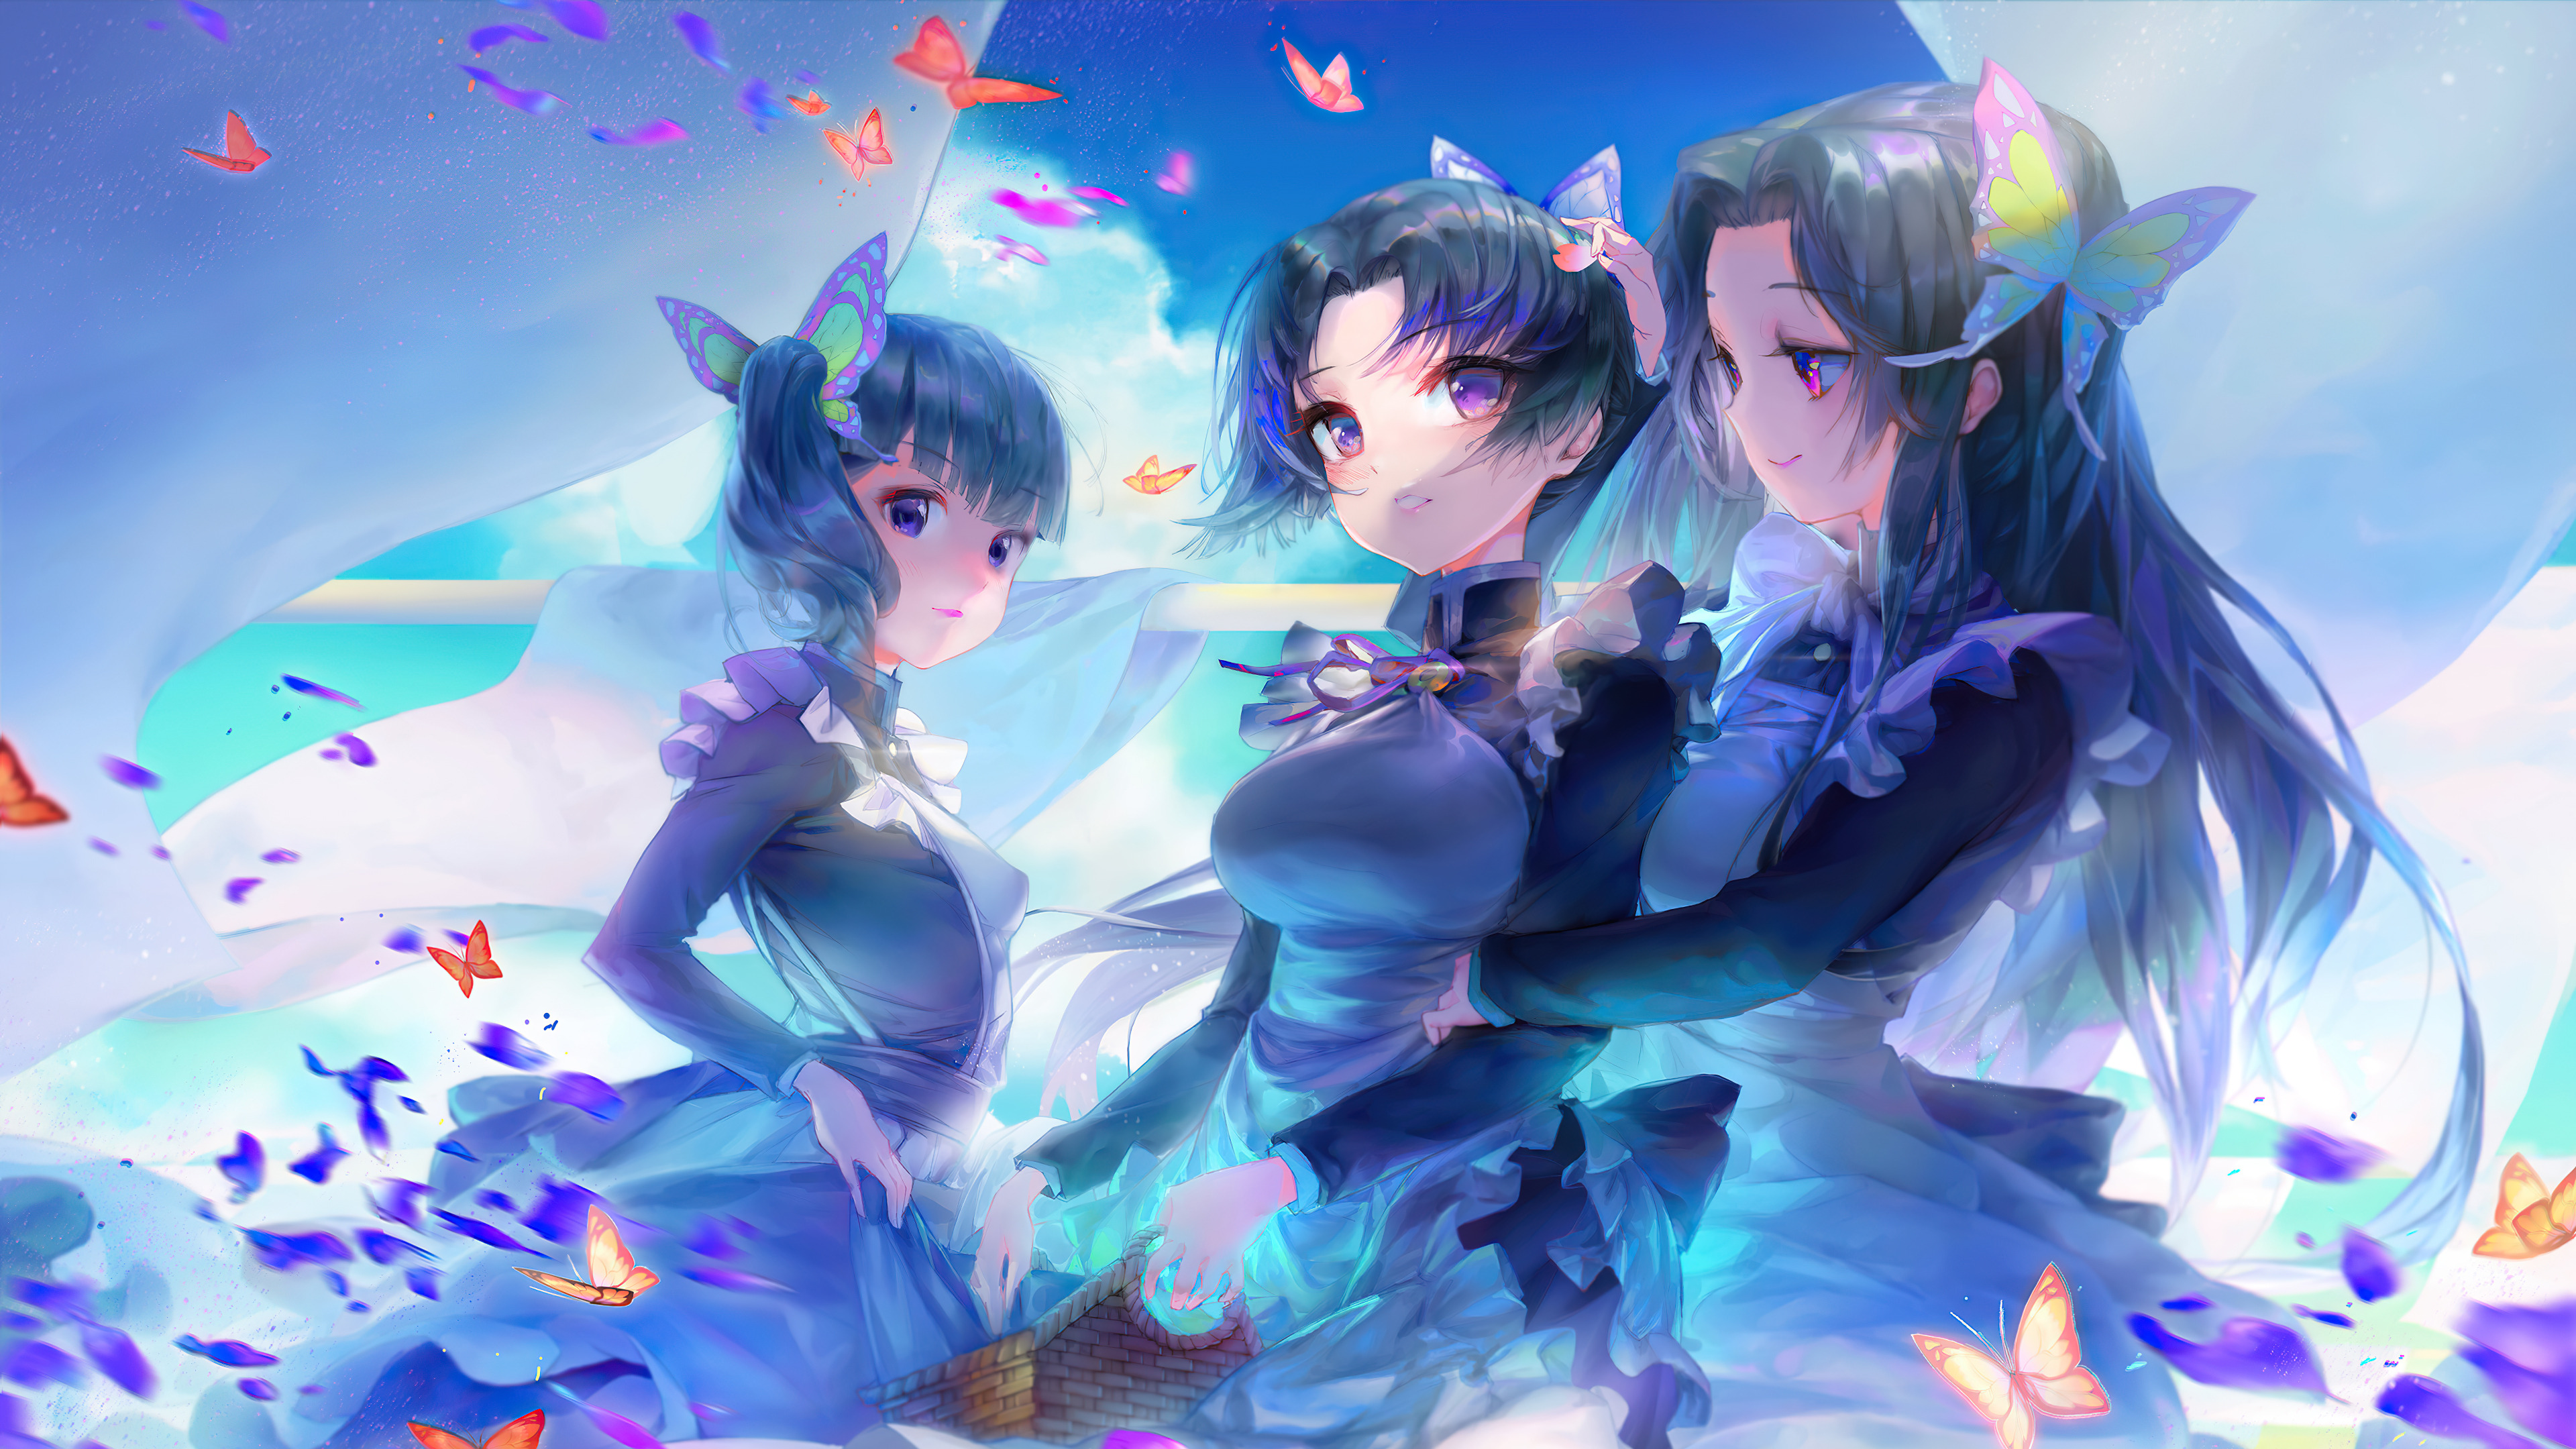 Anime Anime Girls Fantasy Girl Women Sky Sky Blue Digital Art Artwork Illustration Purple Eyes Viole 3840x2160